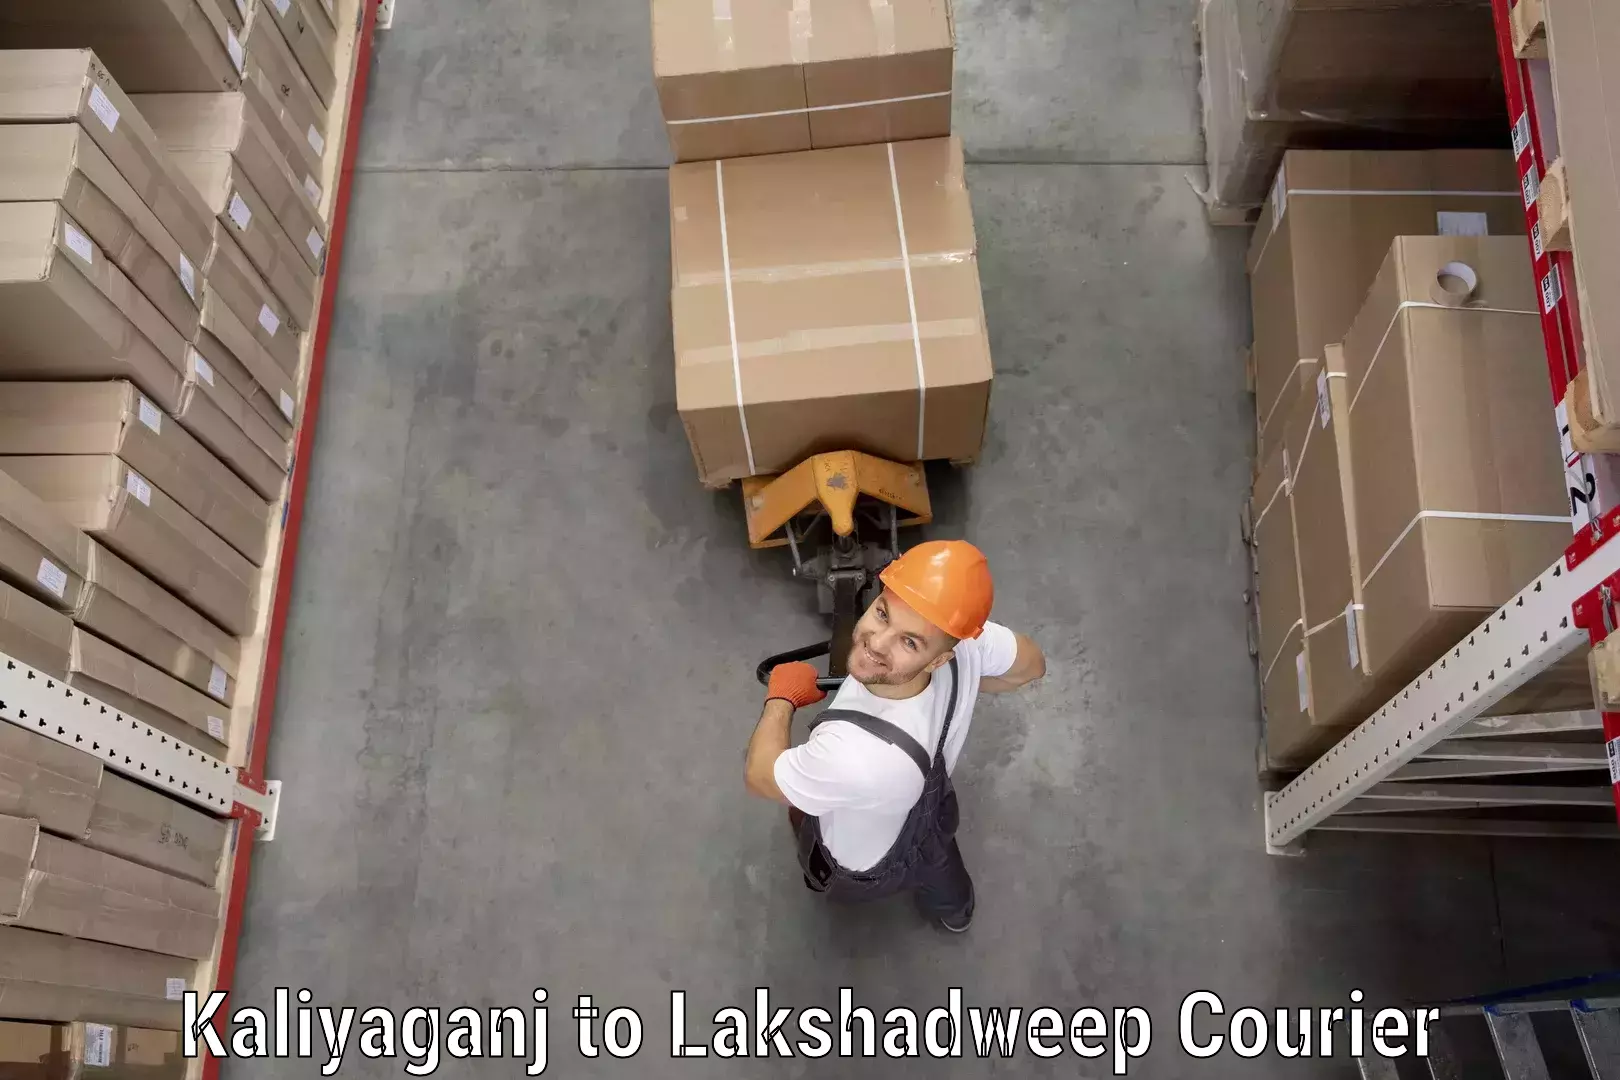 Customer-focused courier Kaliyaganj to Lakshadweep